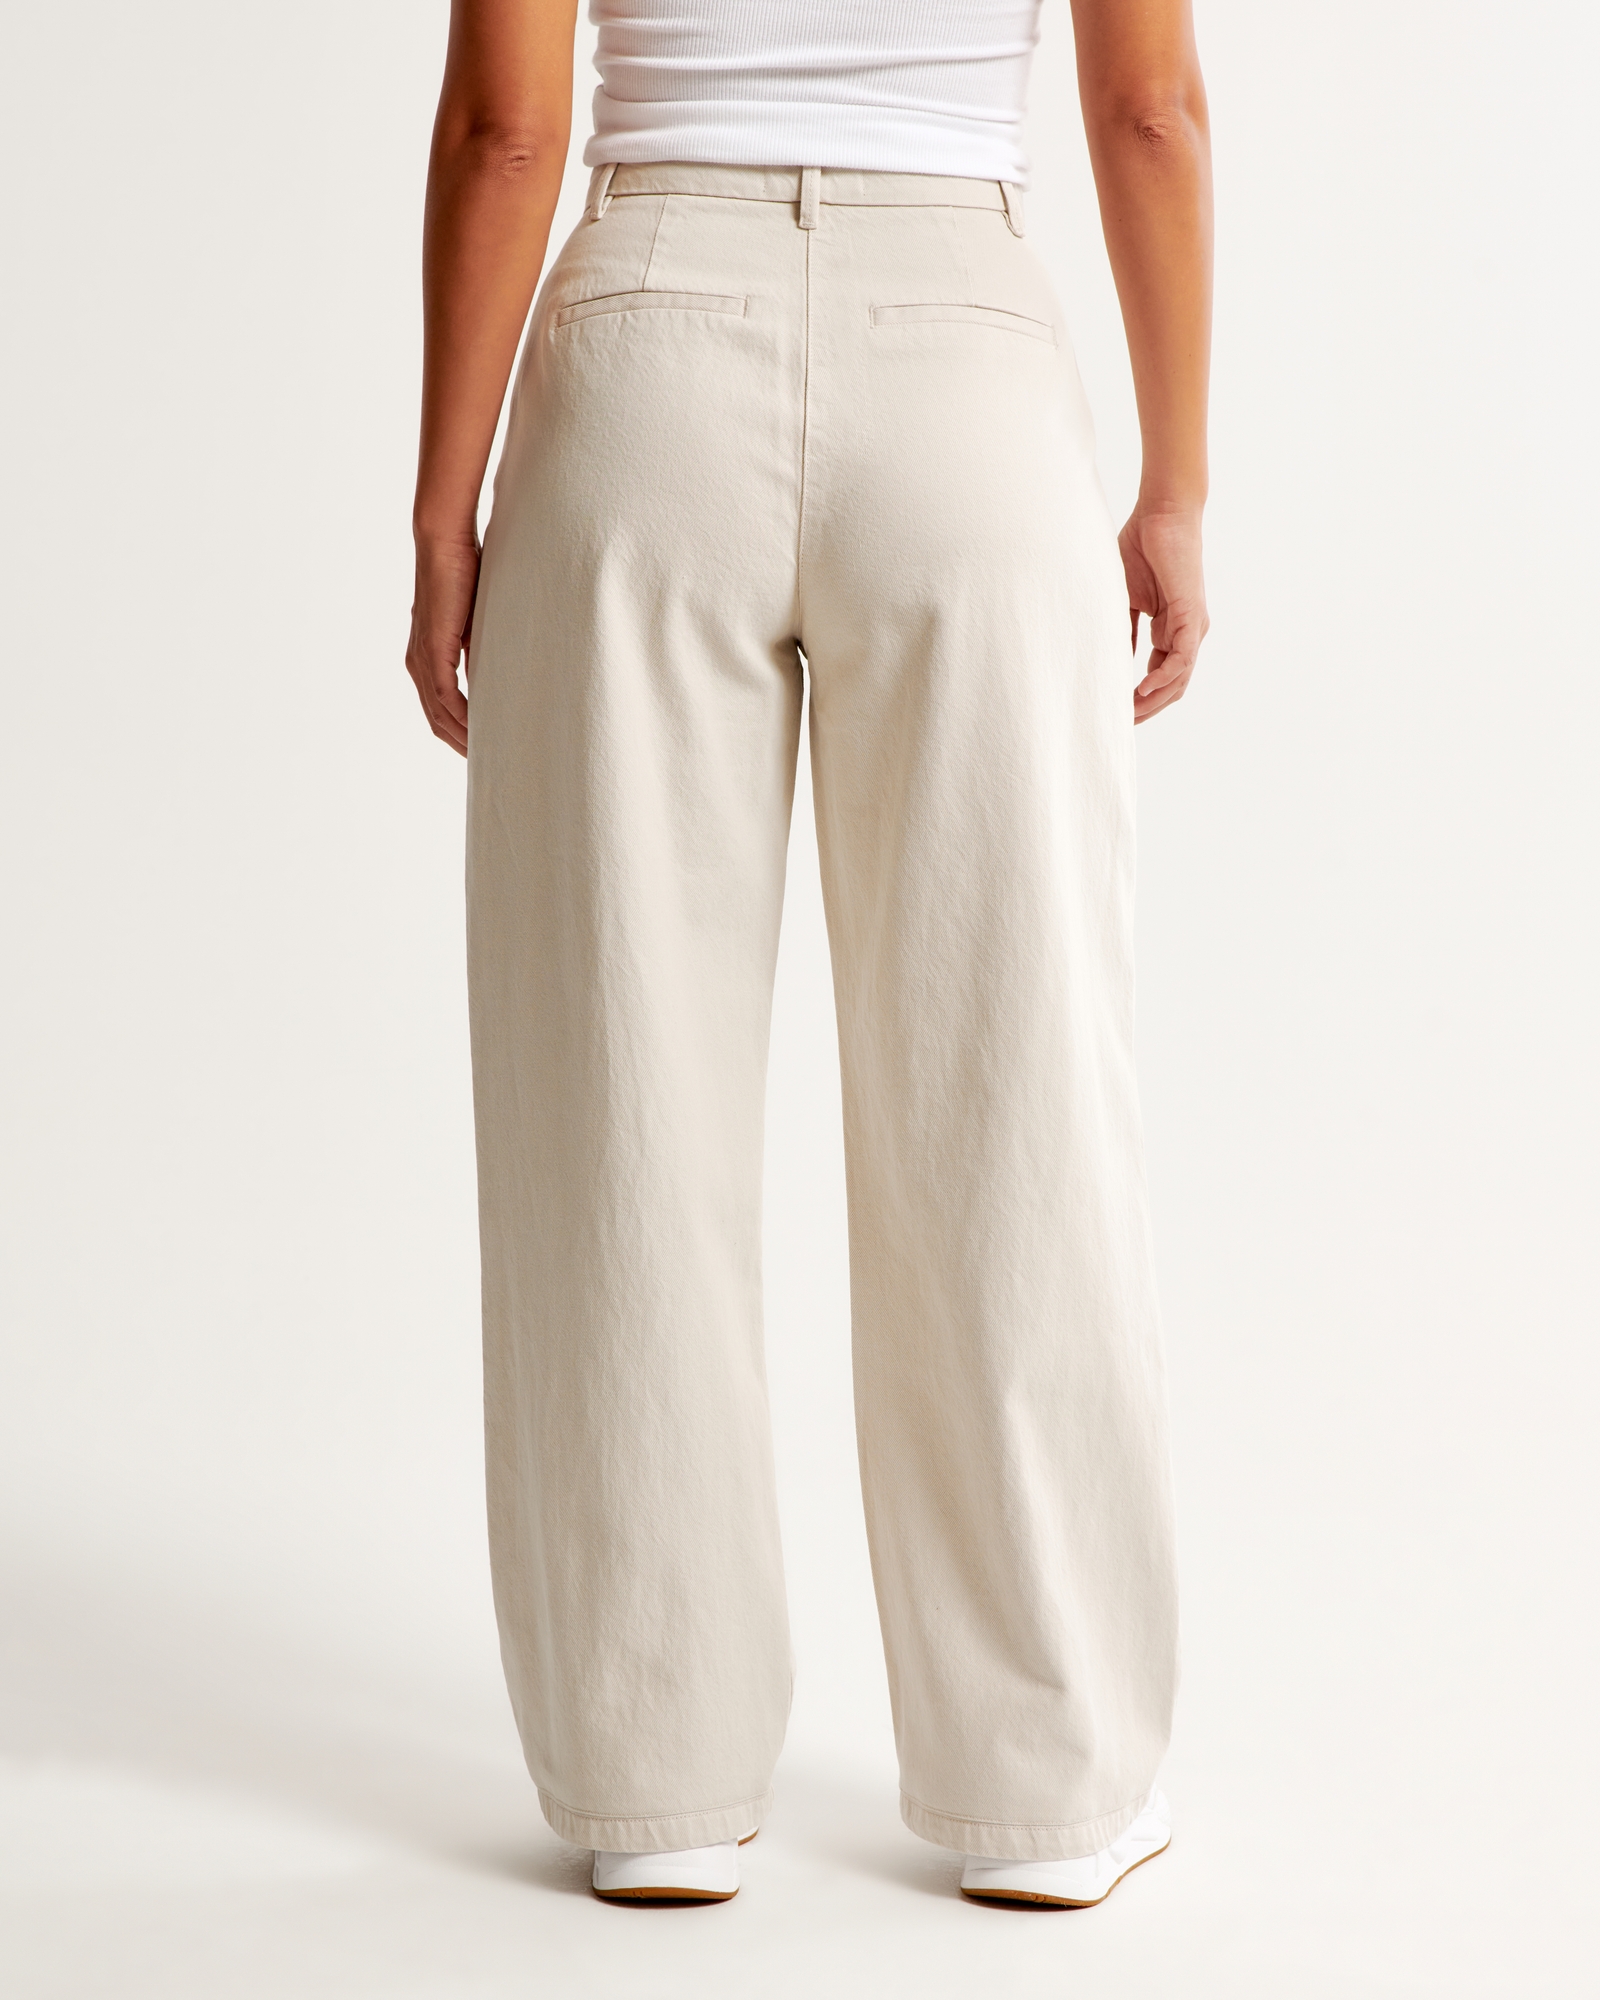 Abercrombie curve love Sloan tailored pants. That's it. : r/PlusSizeFashion